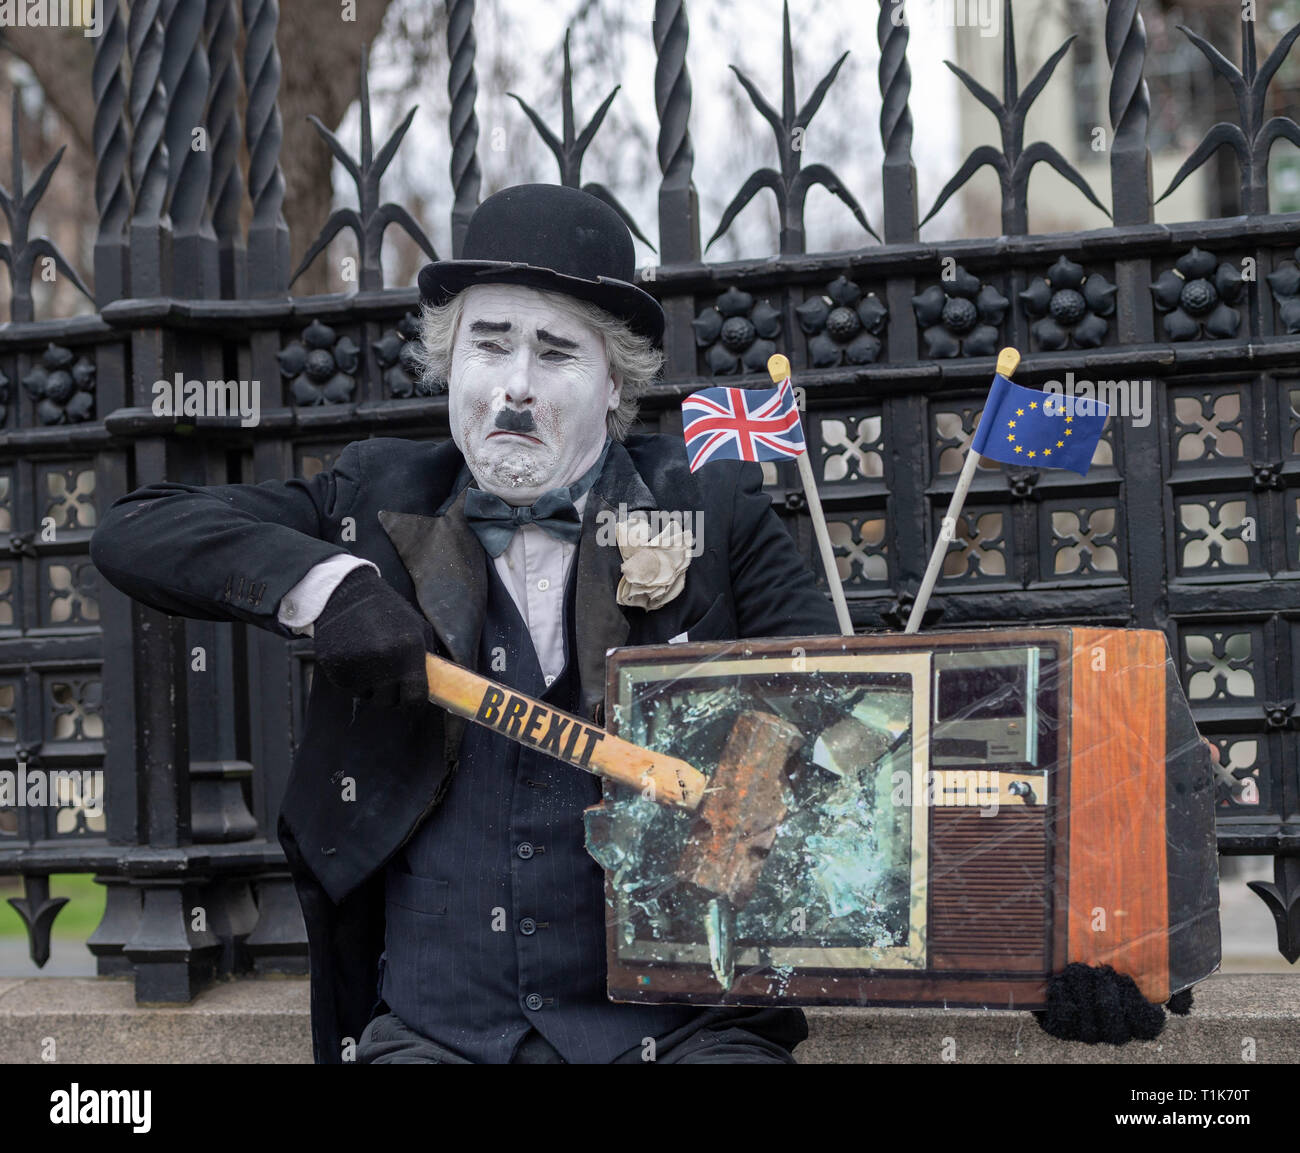 Londra, Regno Unito. Il 27 marzo 2019, Brexit protester Clowning Around vestito come Charlie Chaplin Credito: Ian Davidson/Alamy Live News Foto Stock